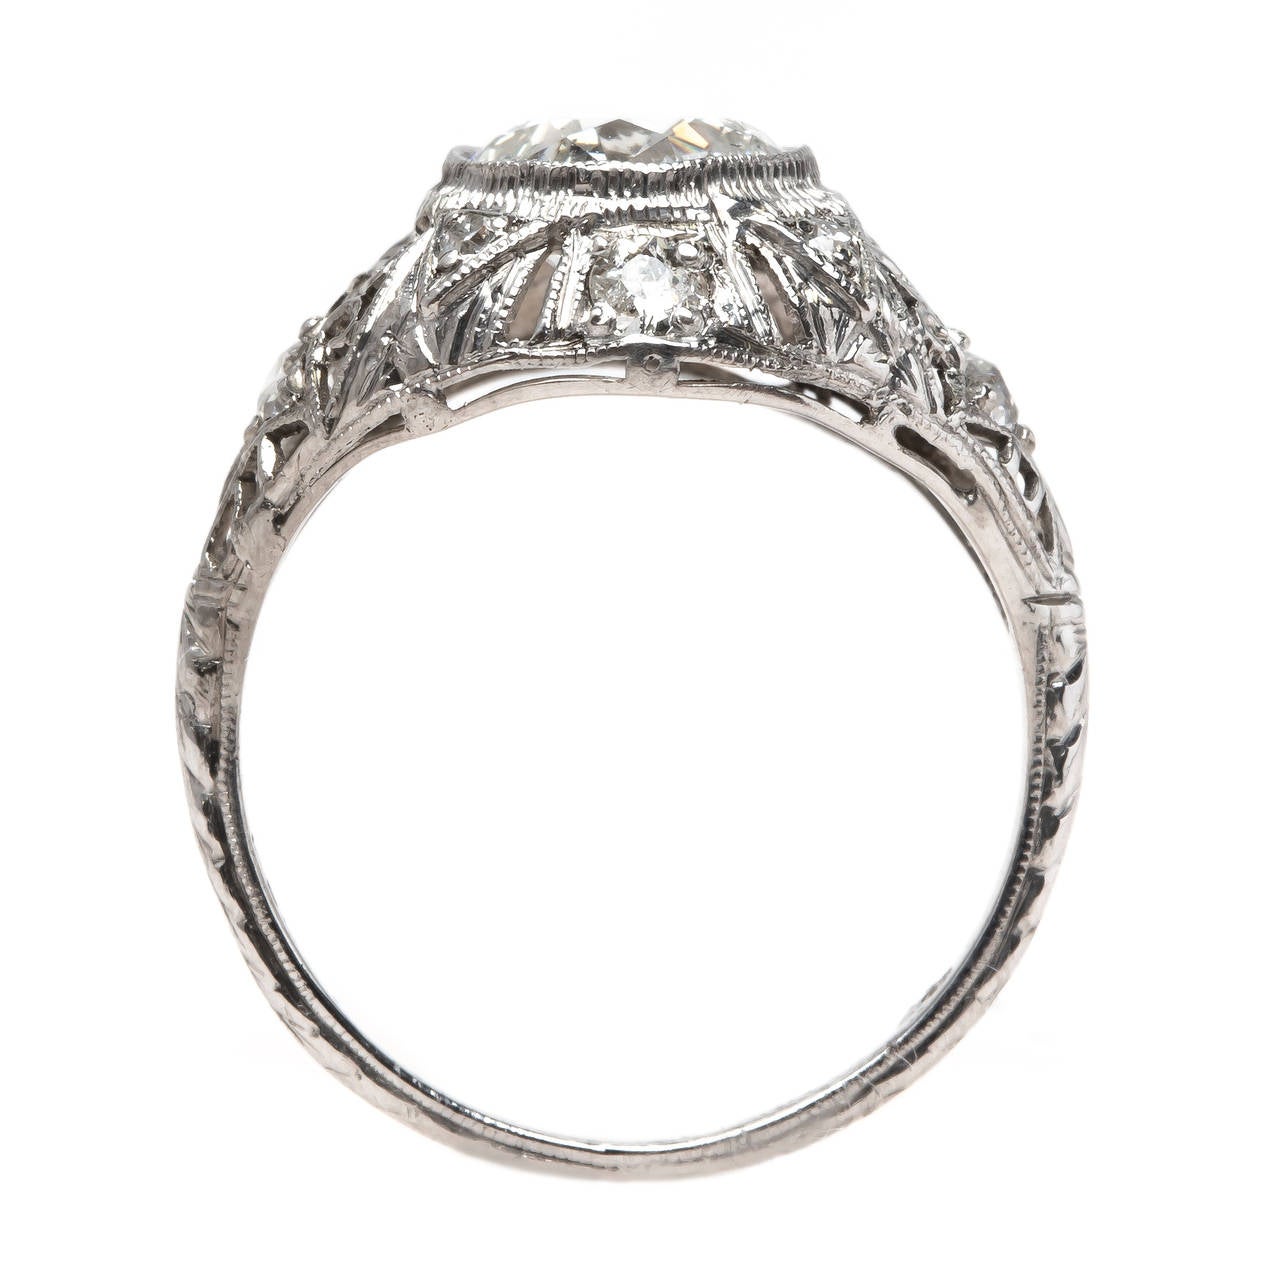 Women's Spectacular Edwardian Era Engagement Ring with Feminine Filigree